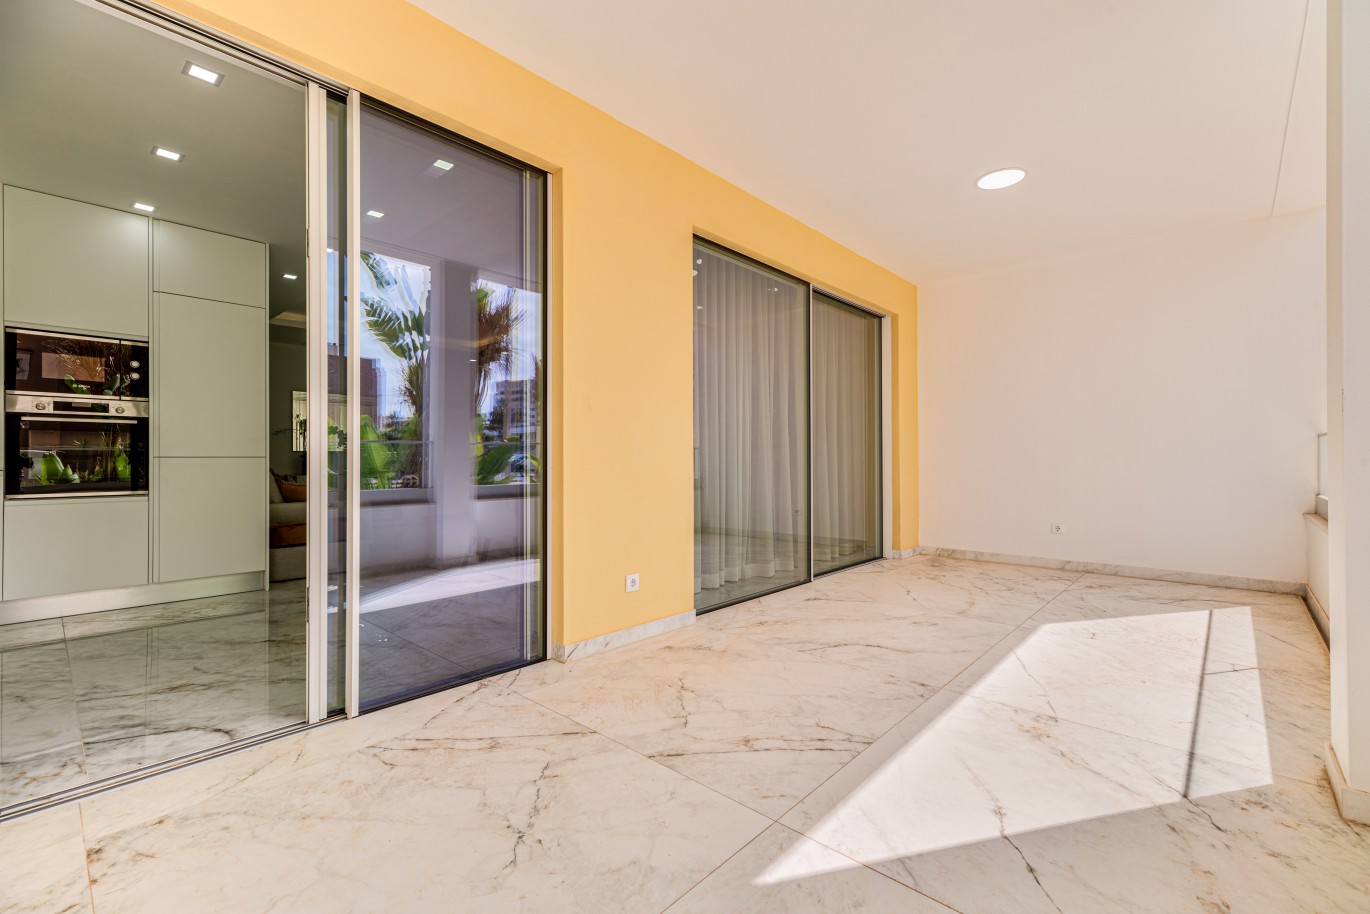 Verkauf einer Wohnung im Bau, mit Terrasse, Lagos, Algarve, Portugal_238590